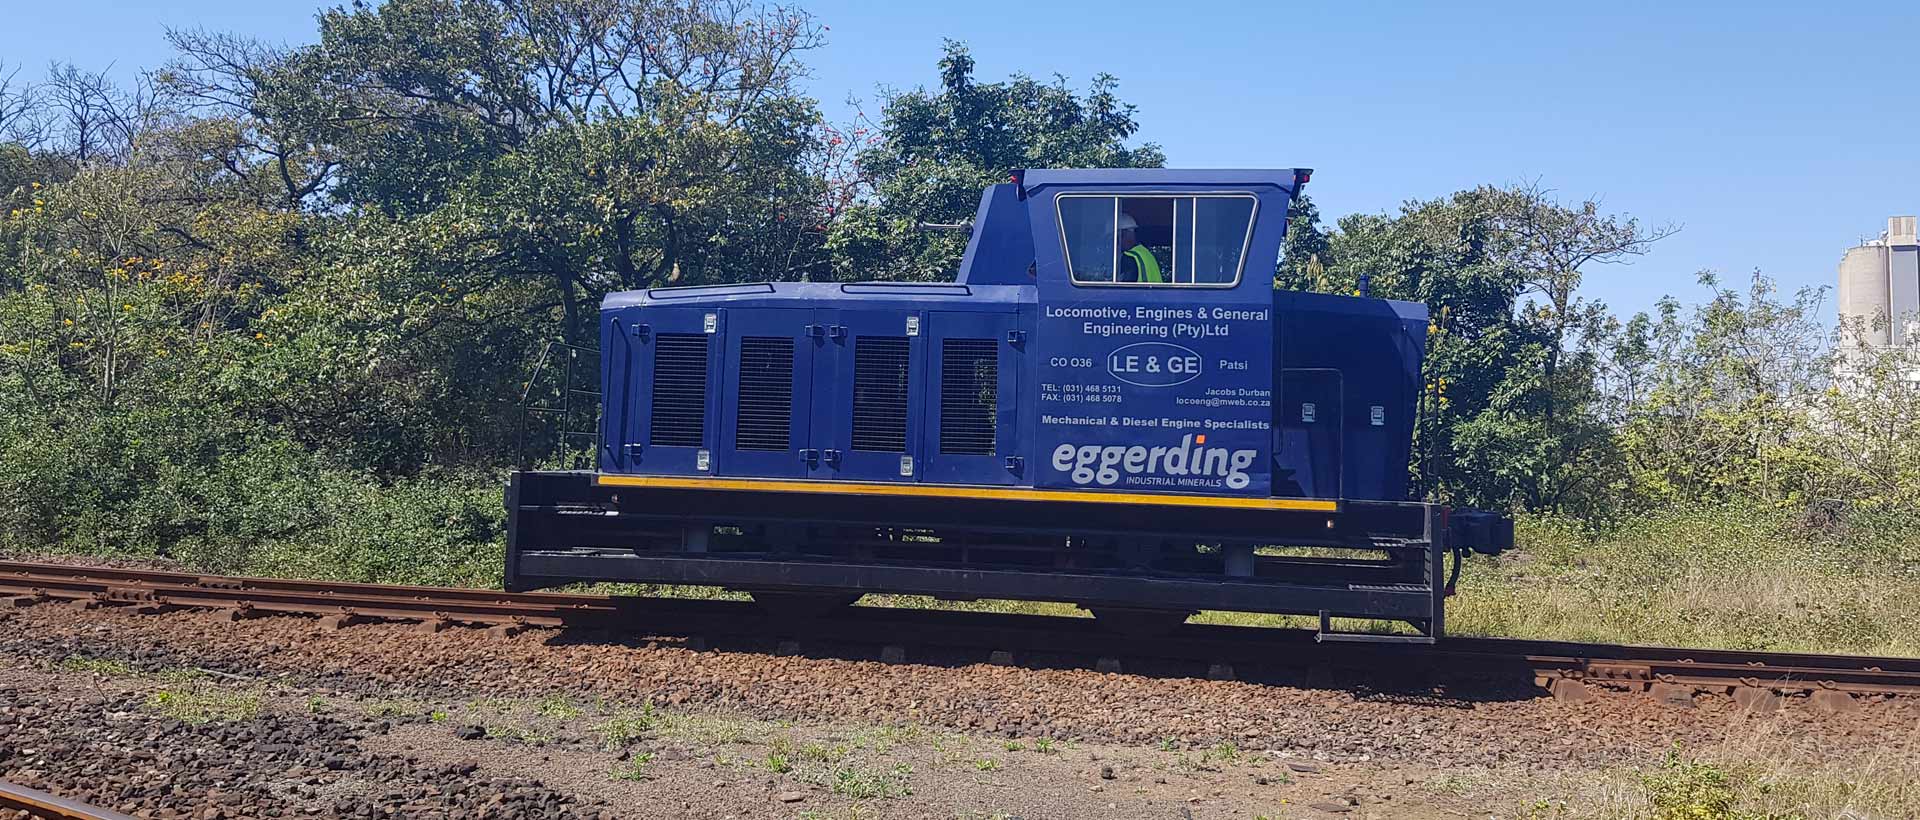 Eggerding train